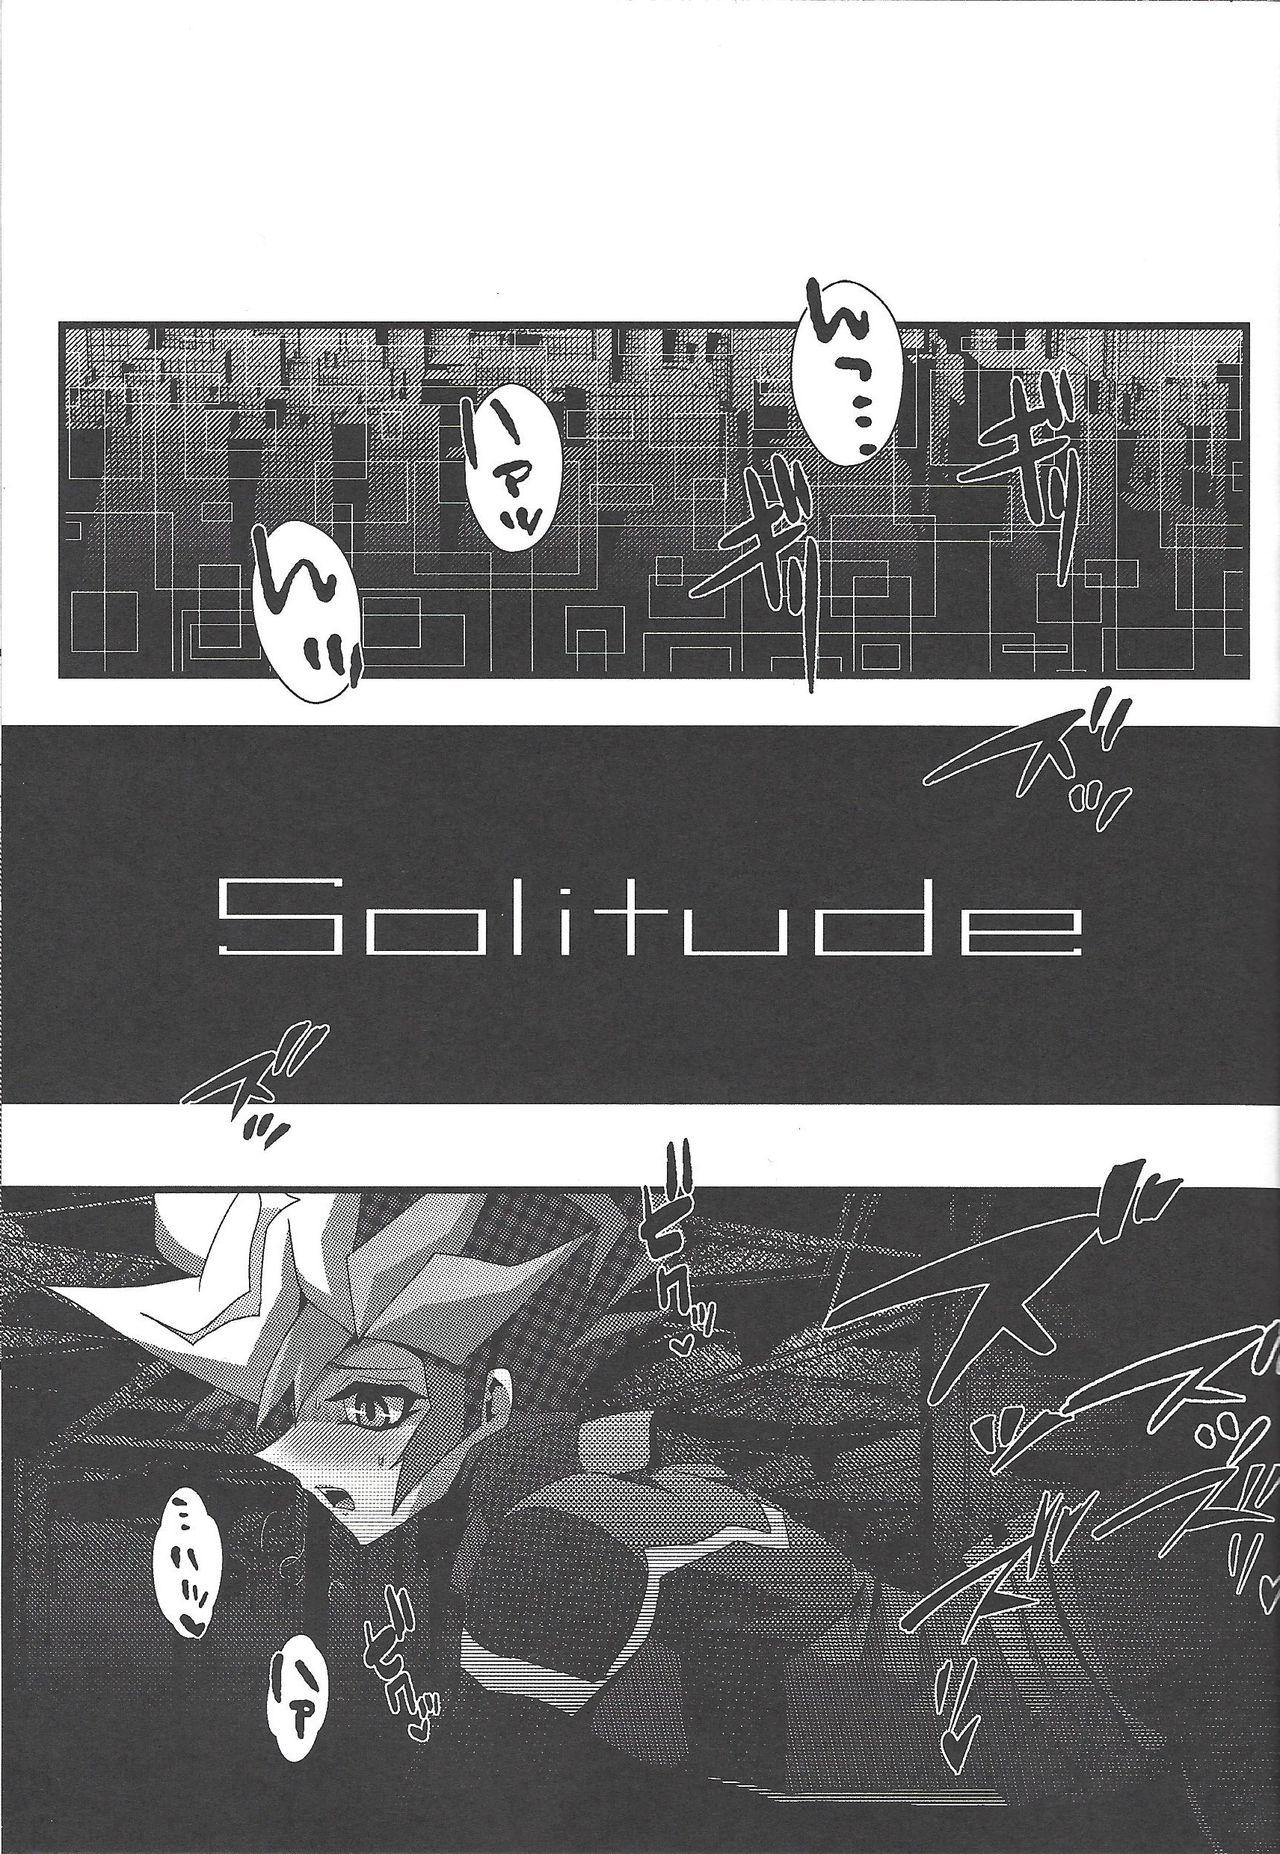 Solitude 13